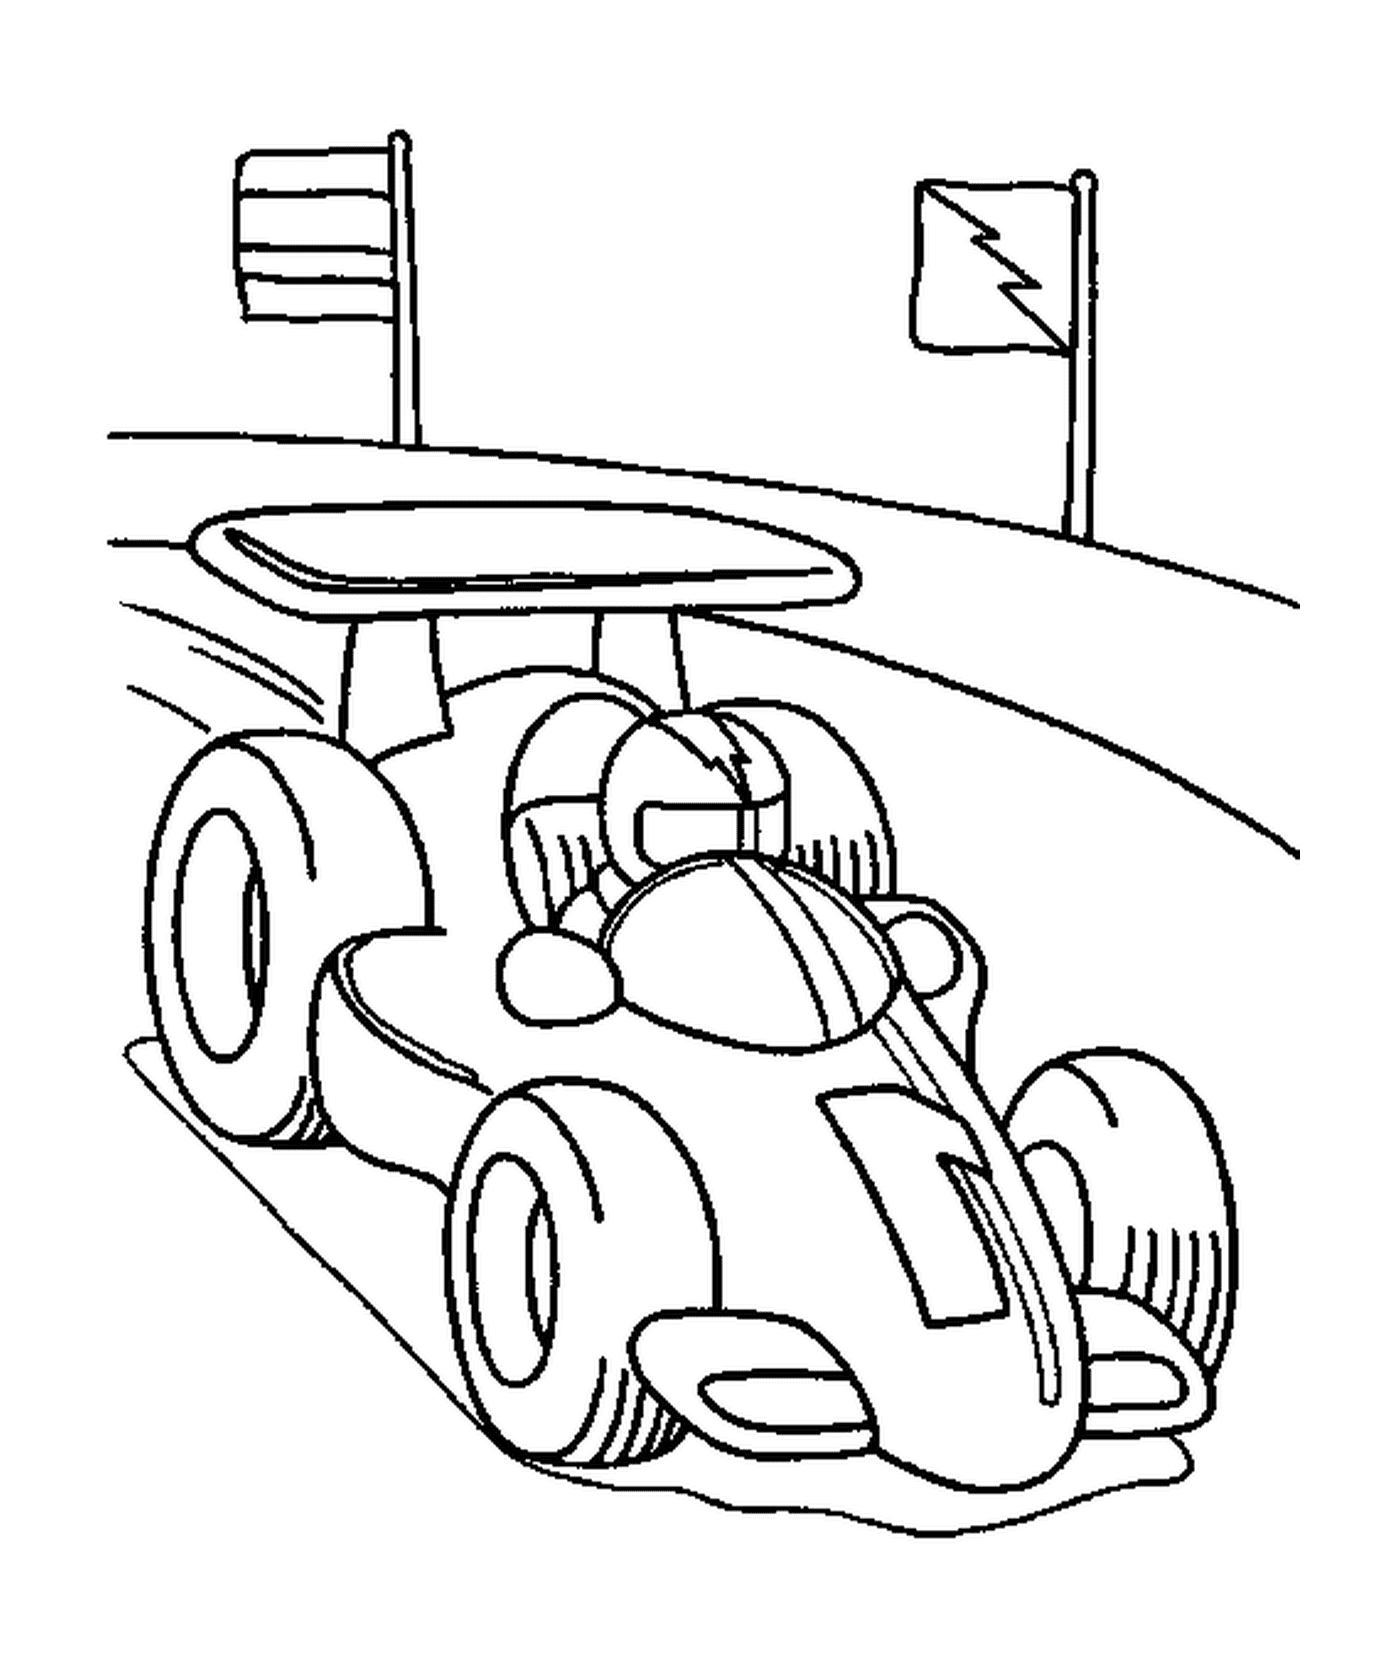 voiture de formule 1